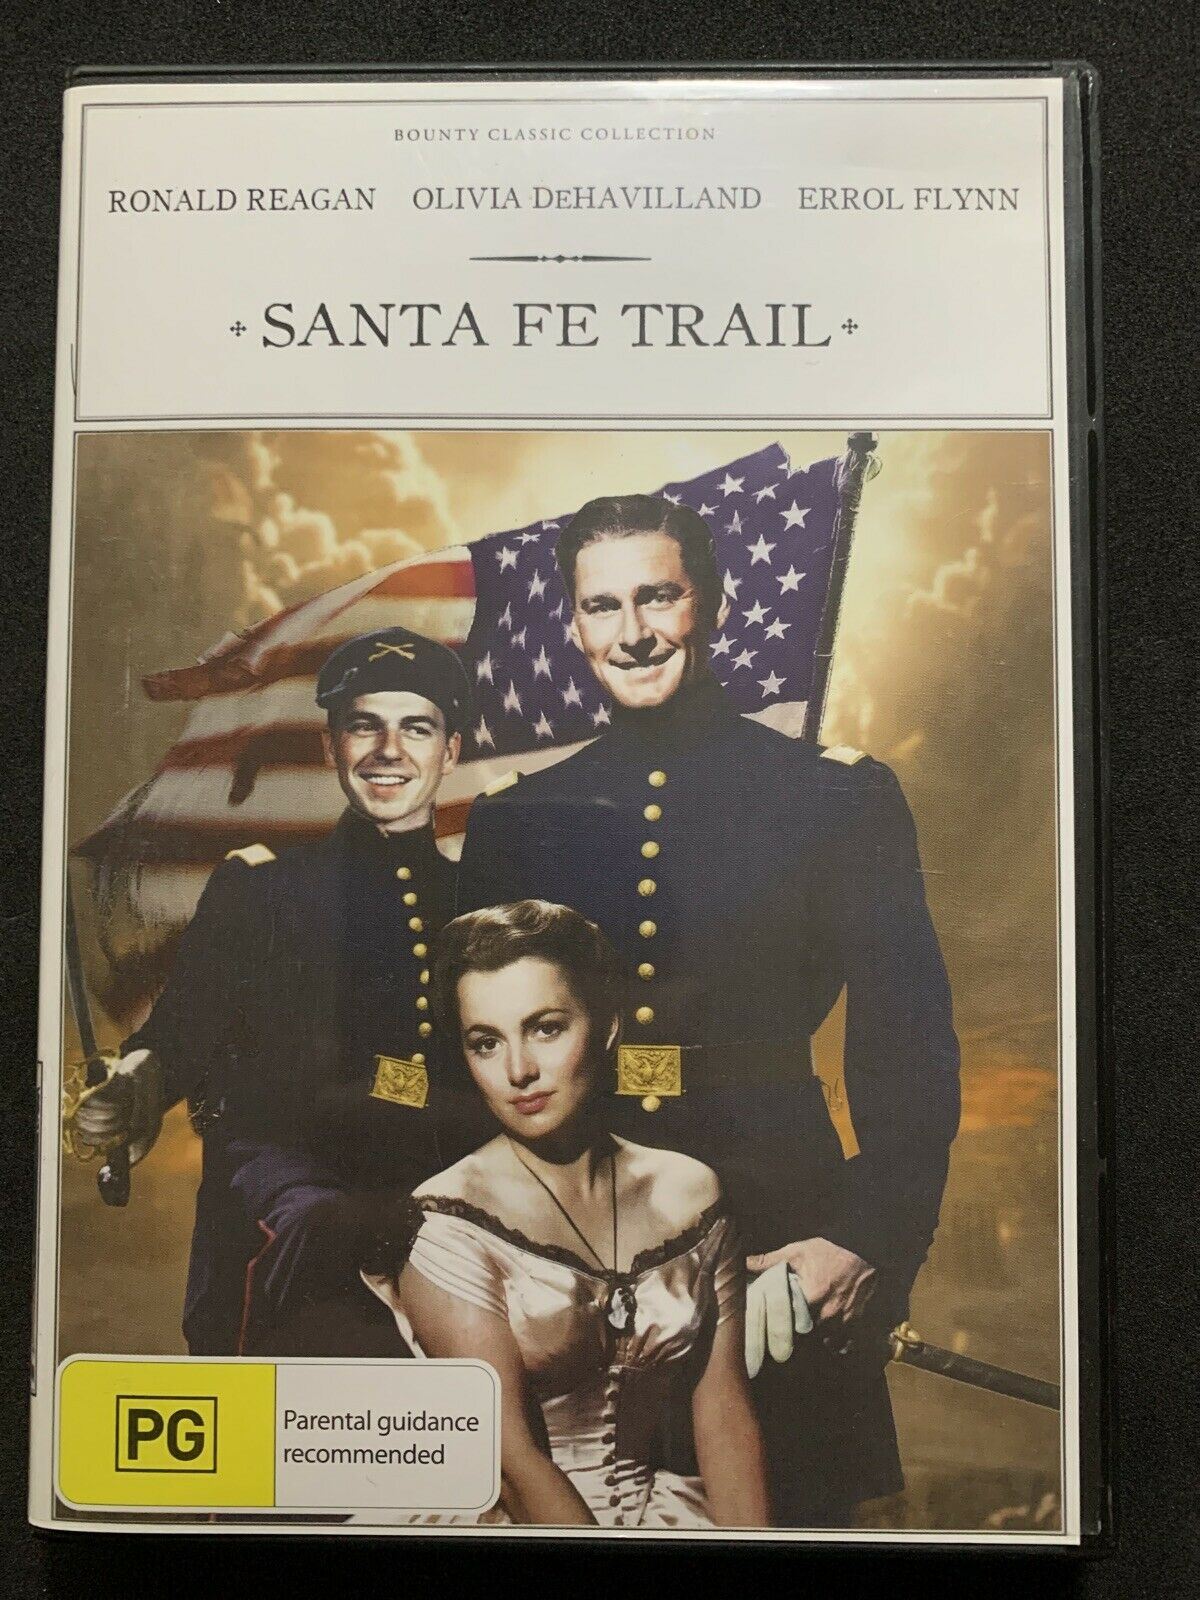 Santa Fe Trail (DVD, 1940) Ronald Reagan, Olivia DeHavilland, Errol Flynn